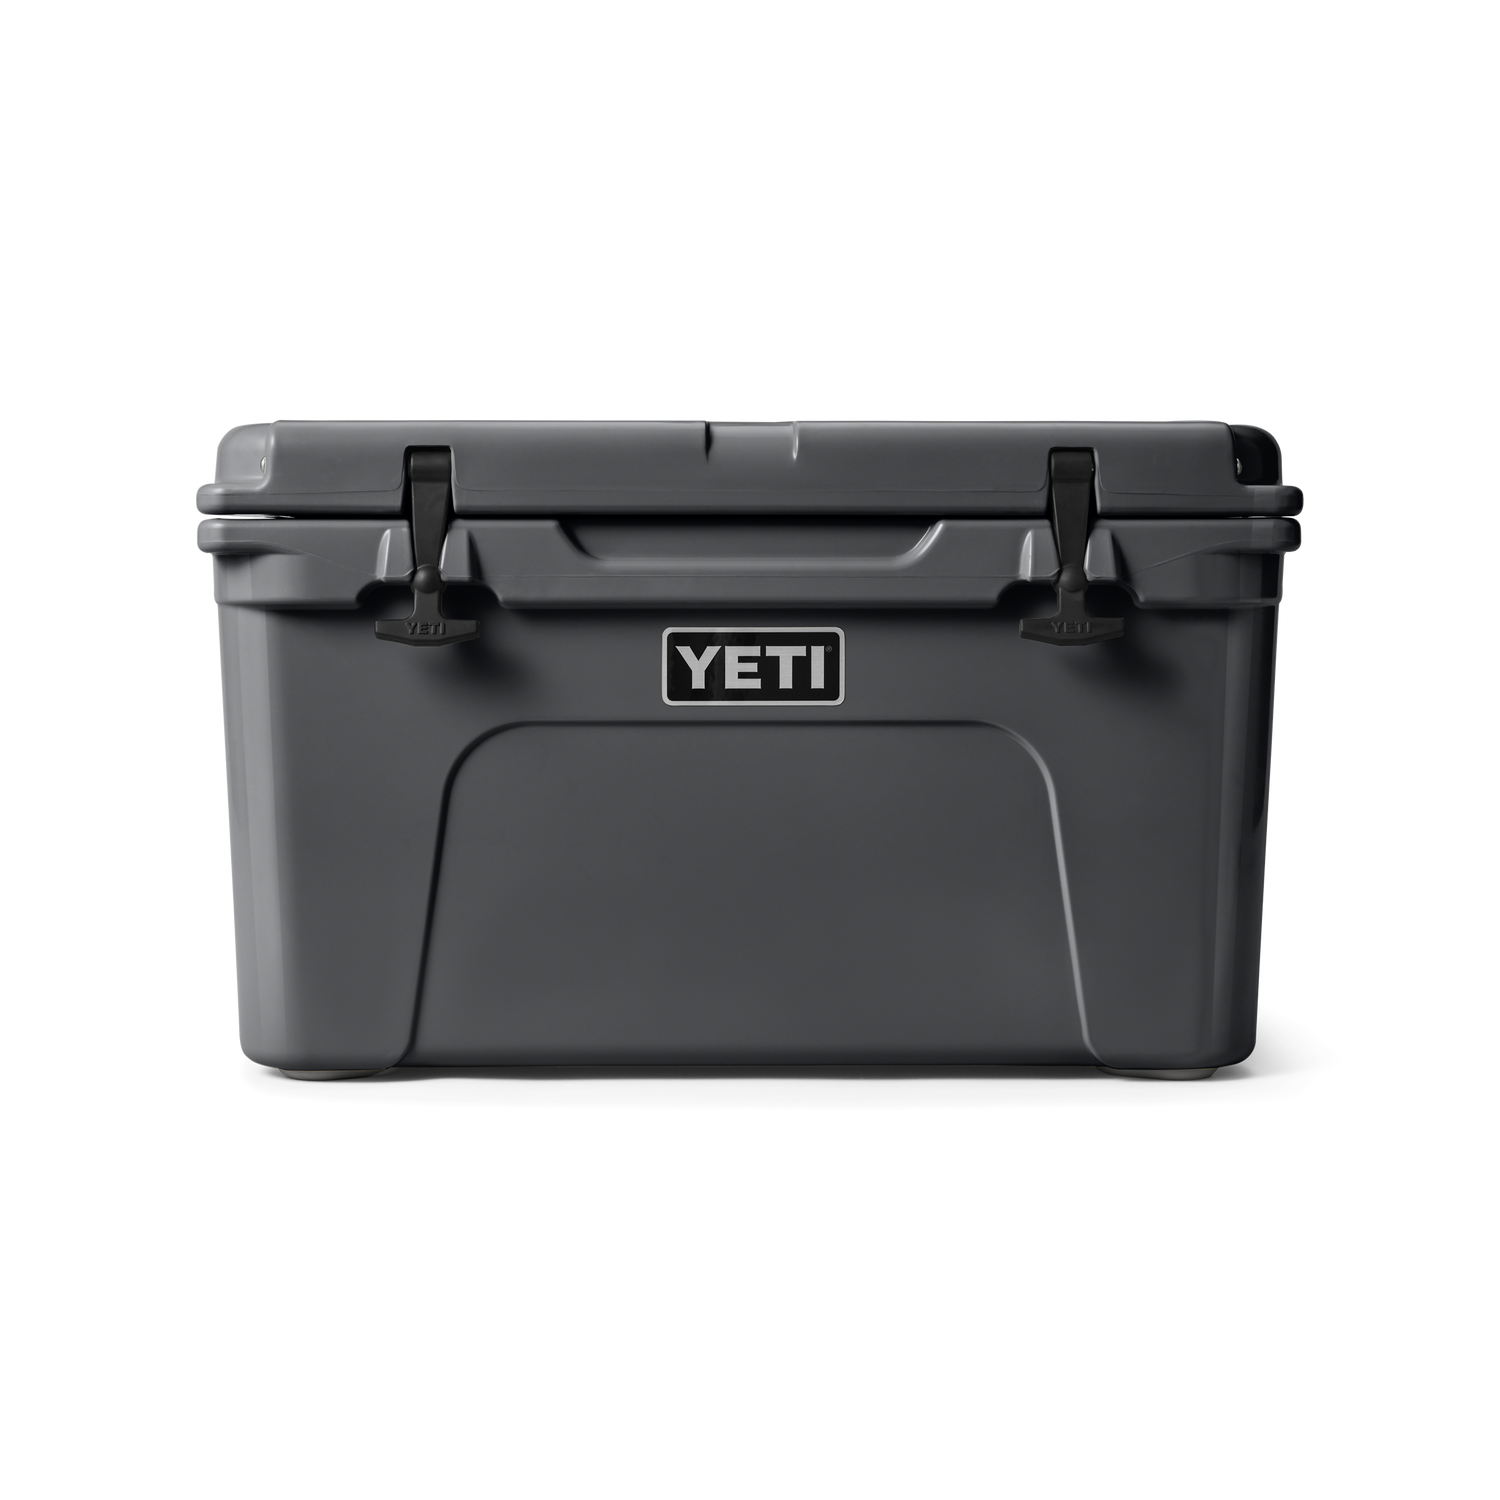 YETI Premium Cool Boxes, Drinkware, And More – YETI EUROPE